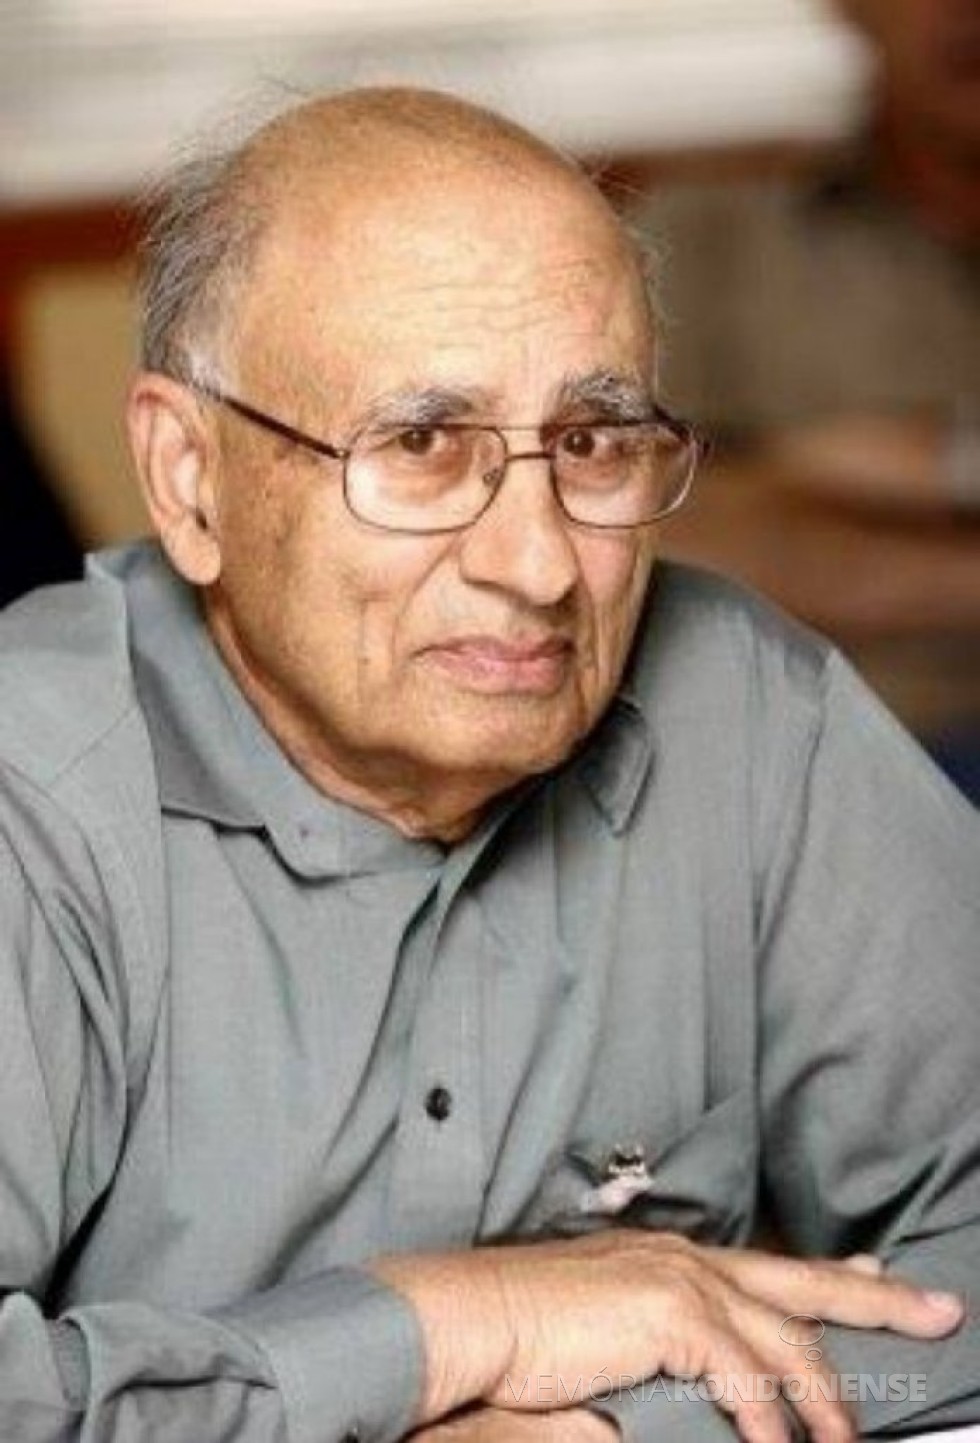 || Engenheiro indiano-estadunidense Gurmukh Sarkaria, projetista da Itaipu Binacional, falecido em 22 de julho de 2014. Imagem: www.fabiocampana.com.br - FOTO 8 -